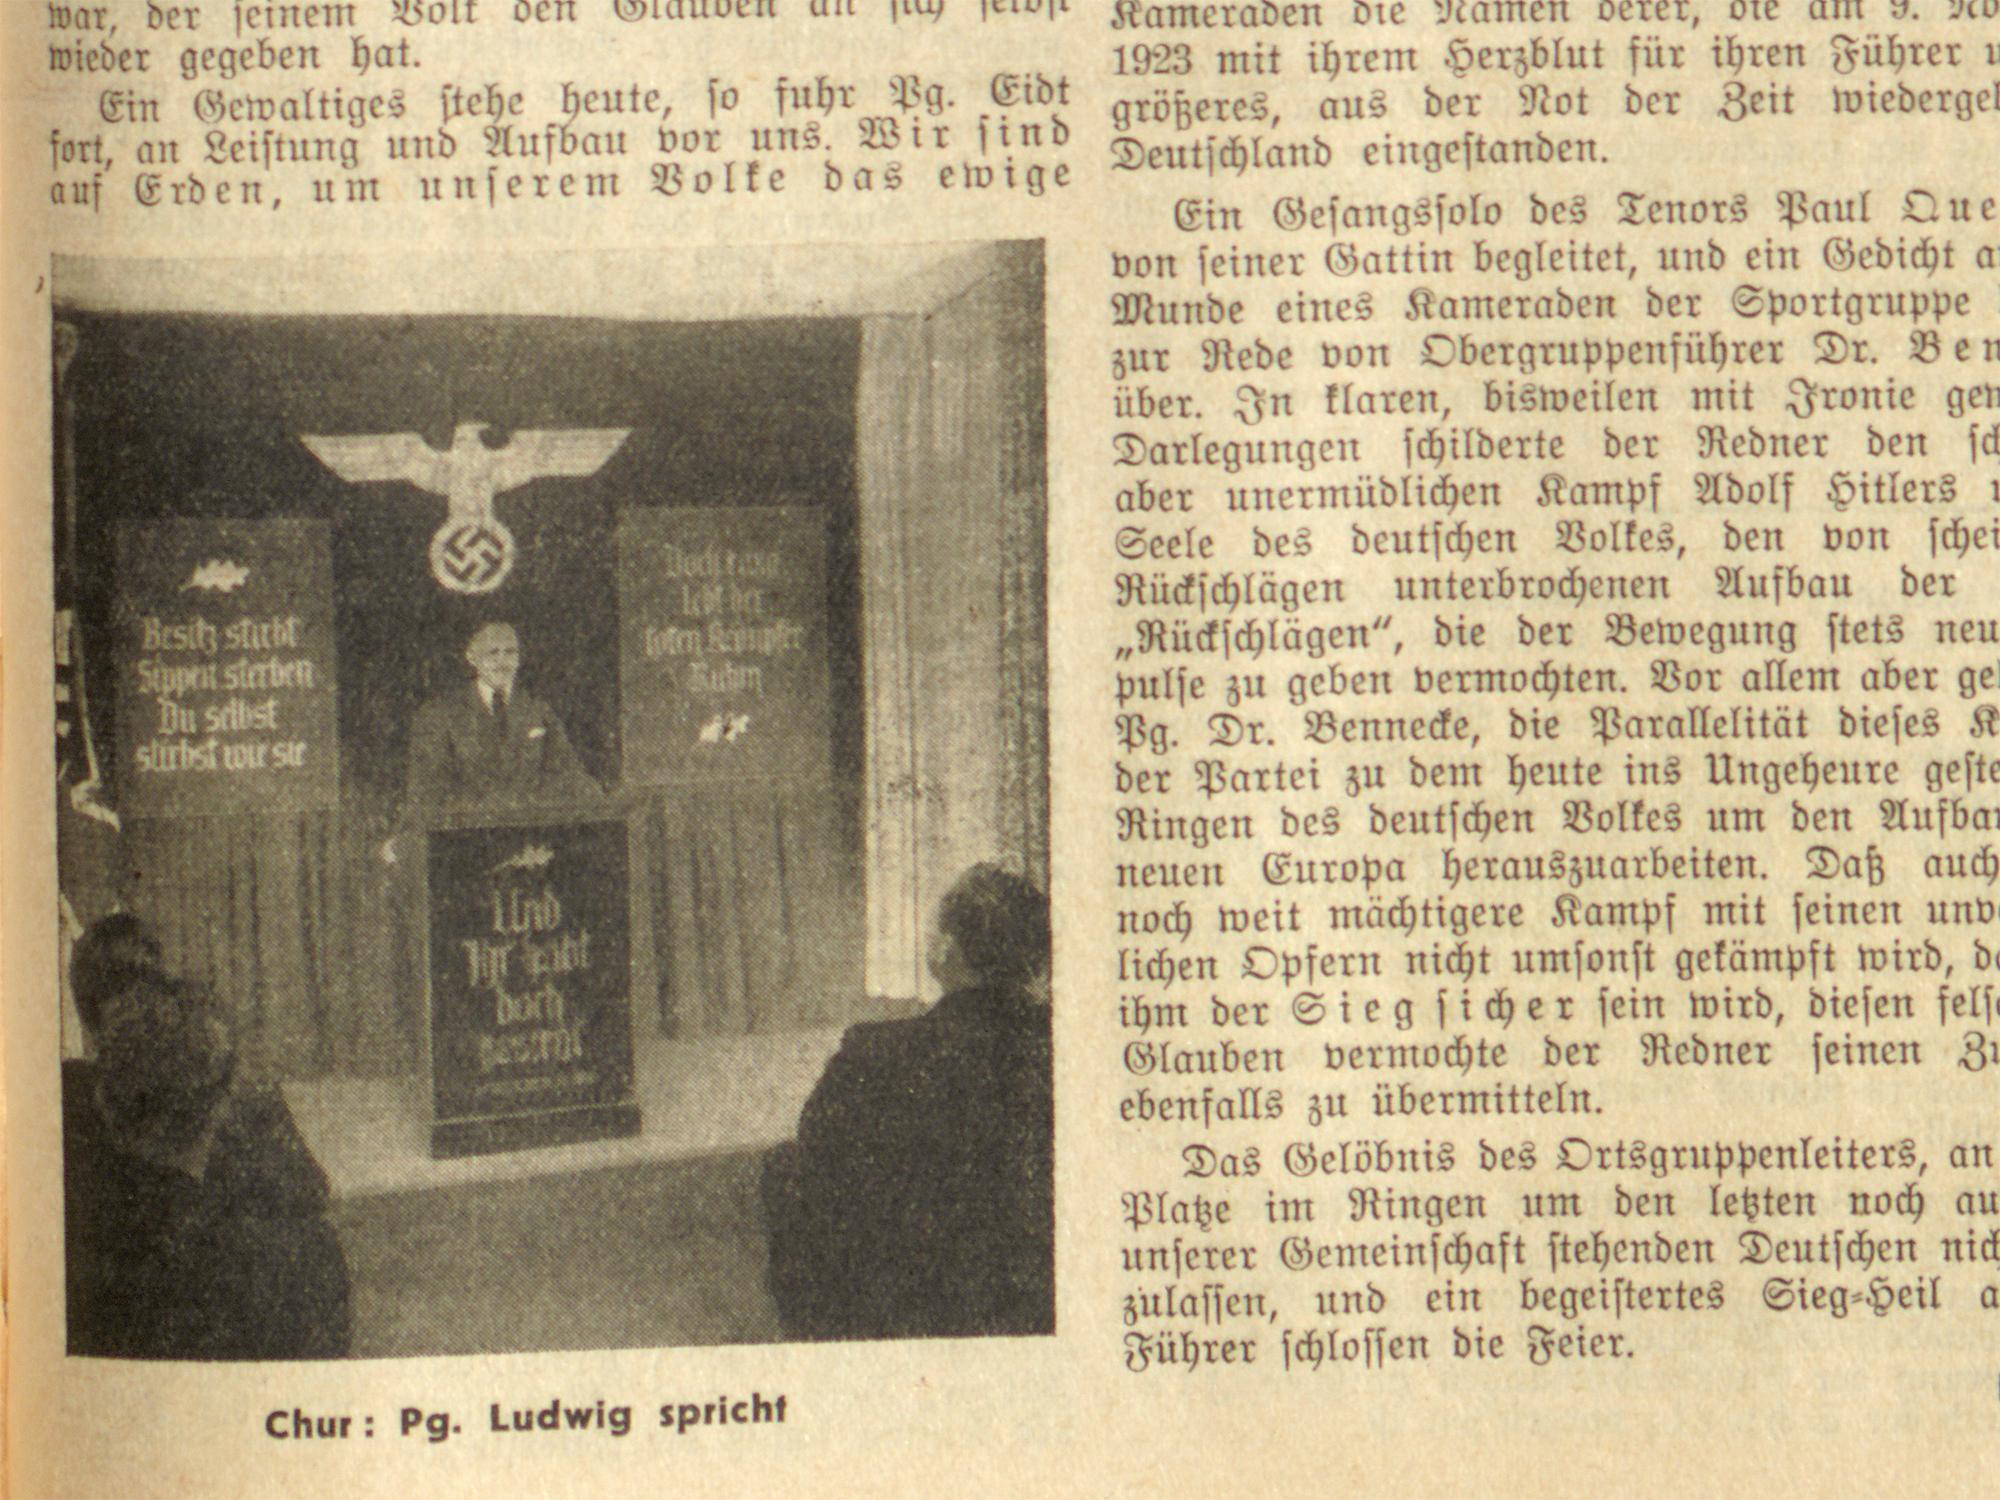 Coire, 9 novembre 1941 : Célébration au "Foyer allemand".L'homme sur la photo, Theodor Ludwig, dirigeait, entre autres, le NSDAP à Coire et était président du groupe local de la Commission allemande des sépultures de guerre. [ETH, ARCHIVES D'HISTOIRE CONTEMPORAINE, JOURNAL ALLEMAND EN SUISSE]